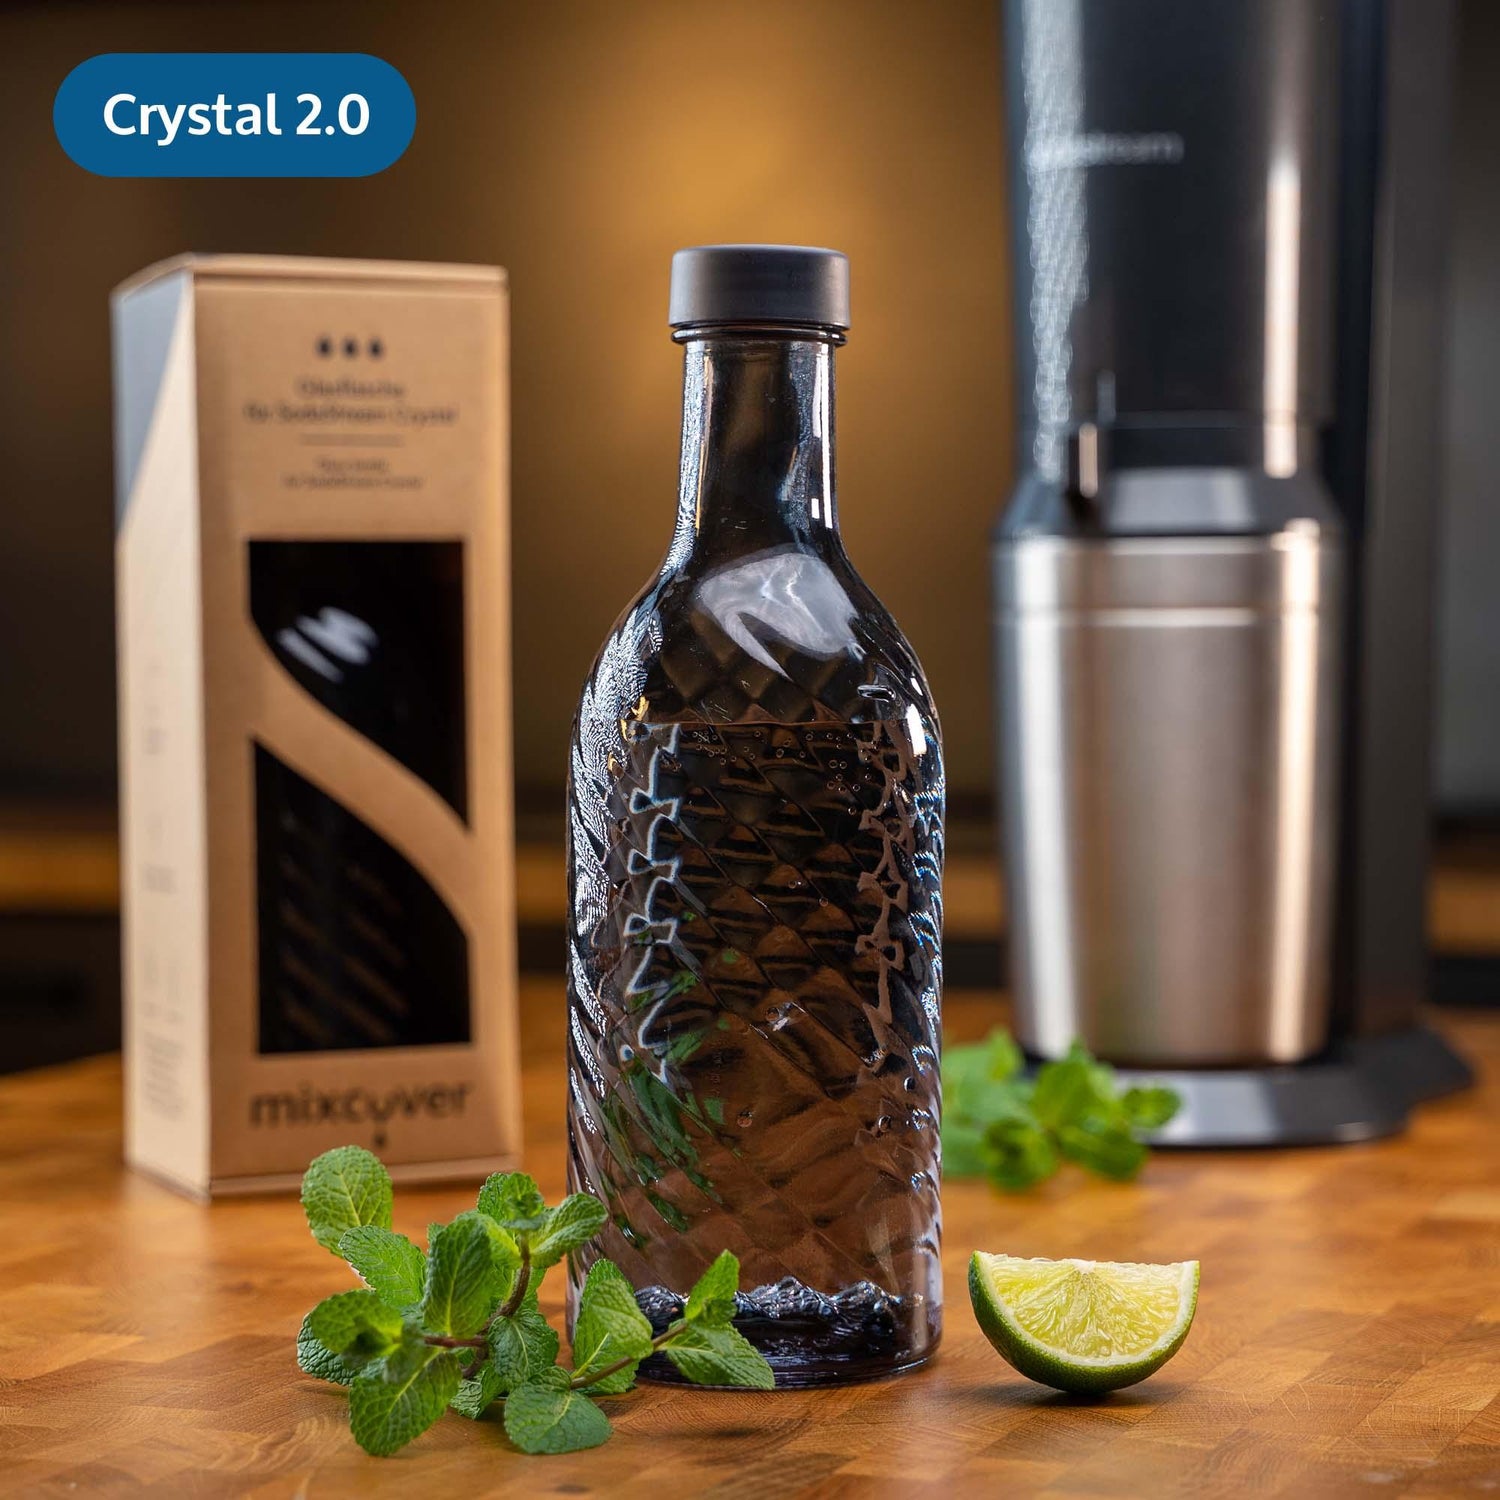 mixcover Glasflasche kompatibel mit SodaStream Crystal 2.0 mit 10% mehr Volumen Dark Grey - Mixcover - Mixcover